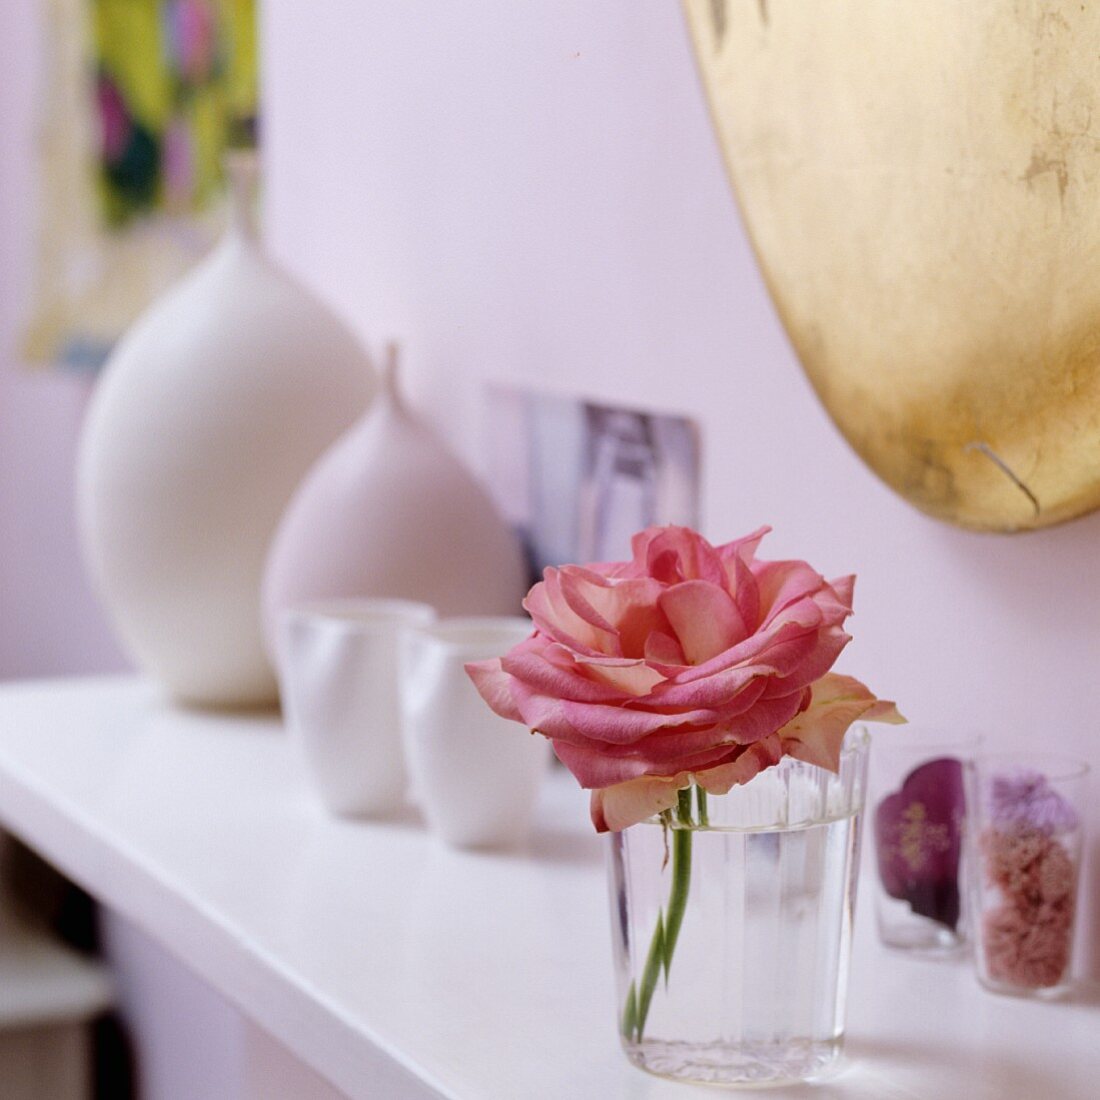 Rose im Wasserglas auf Ablage vor fliederfarbener Wand